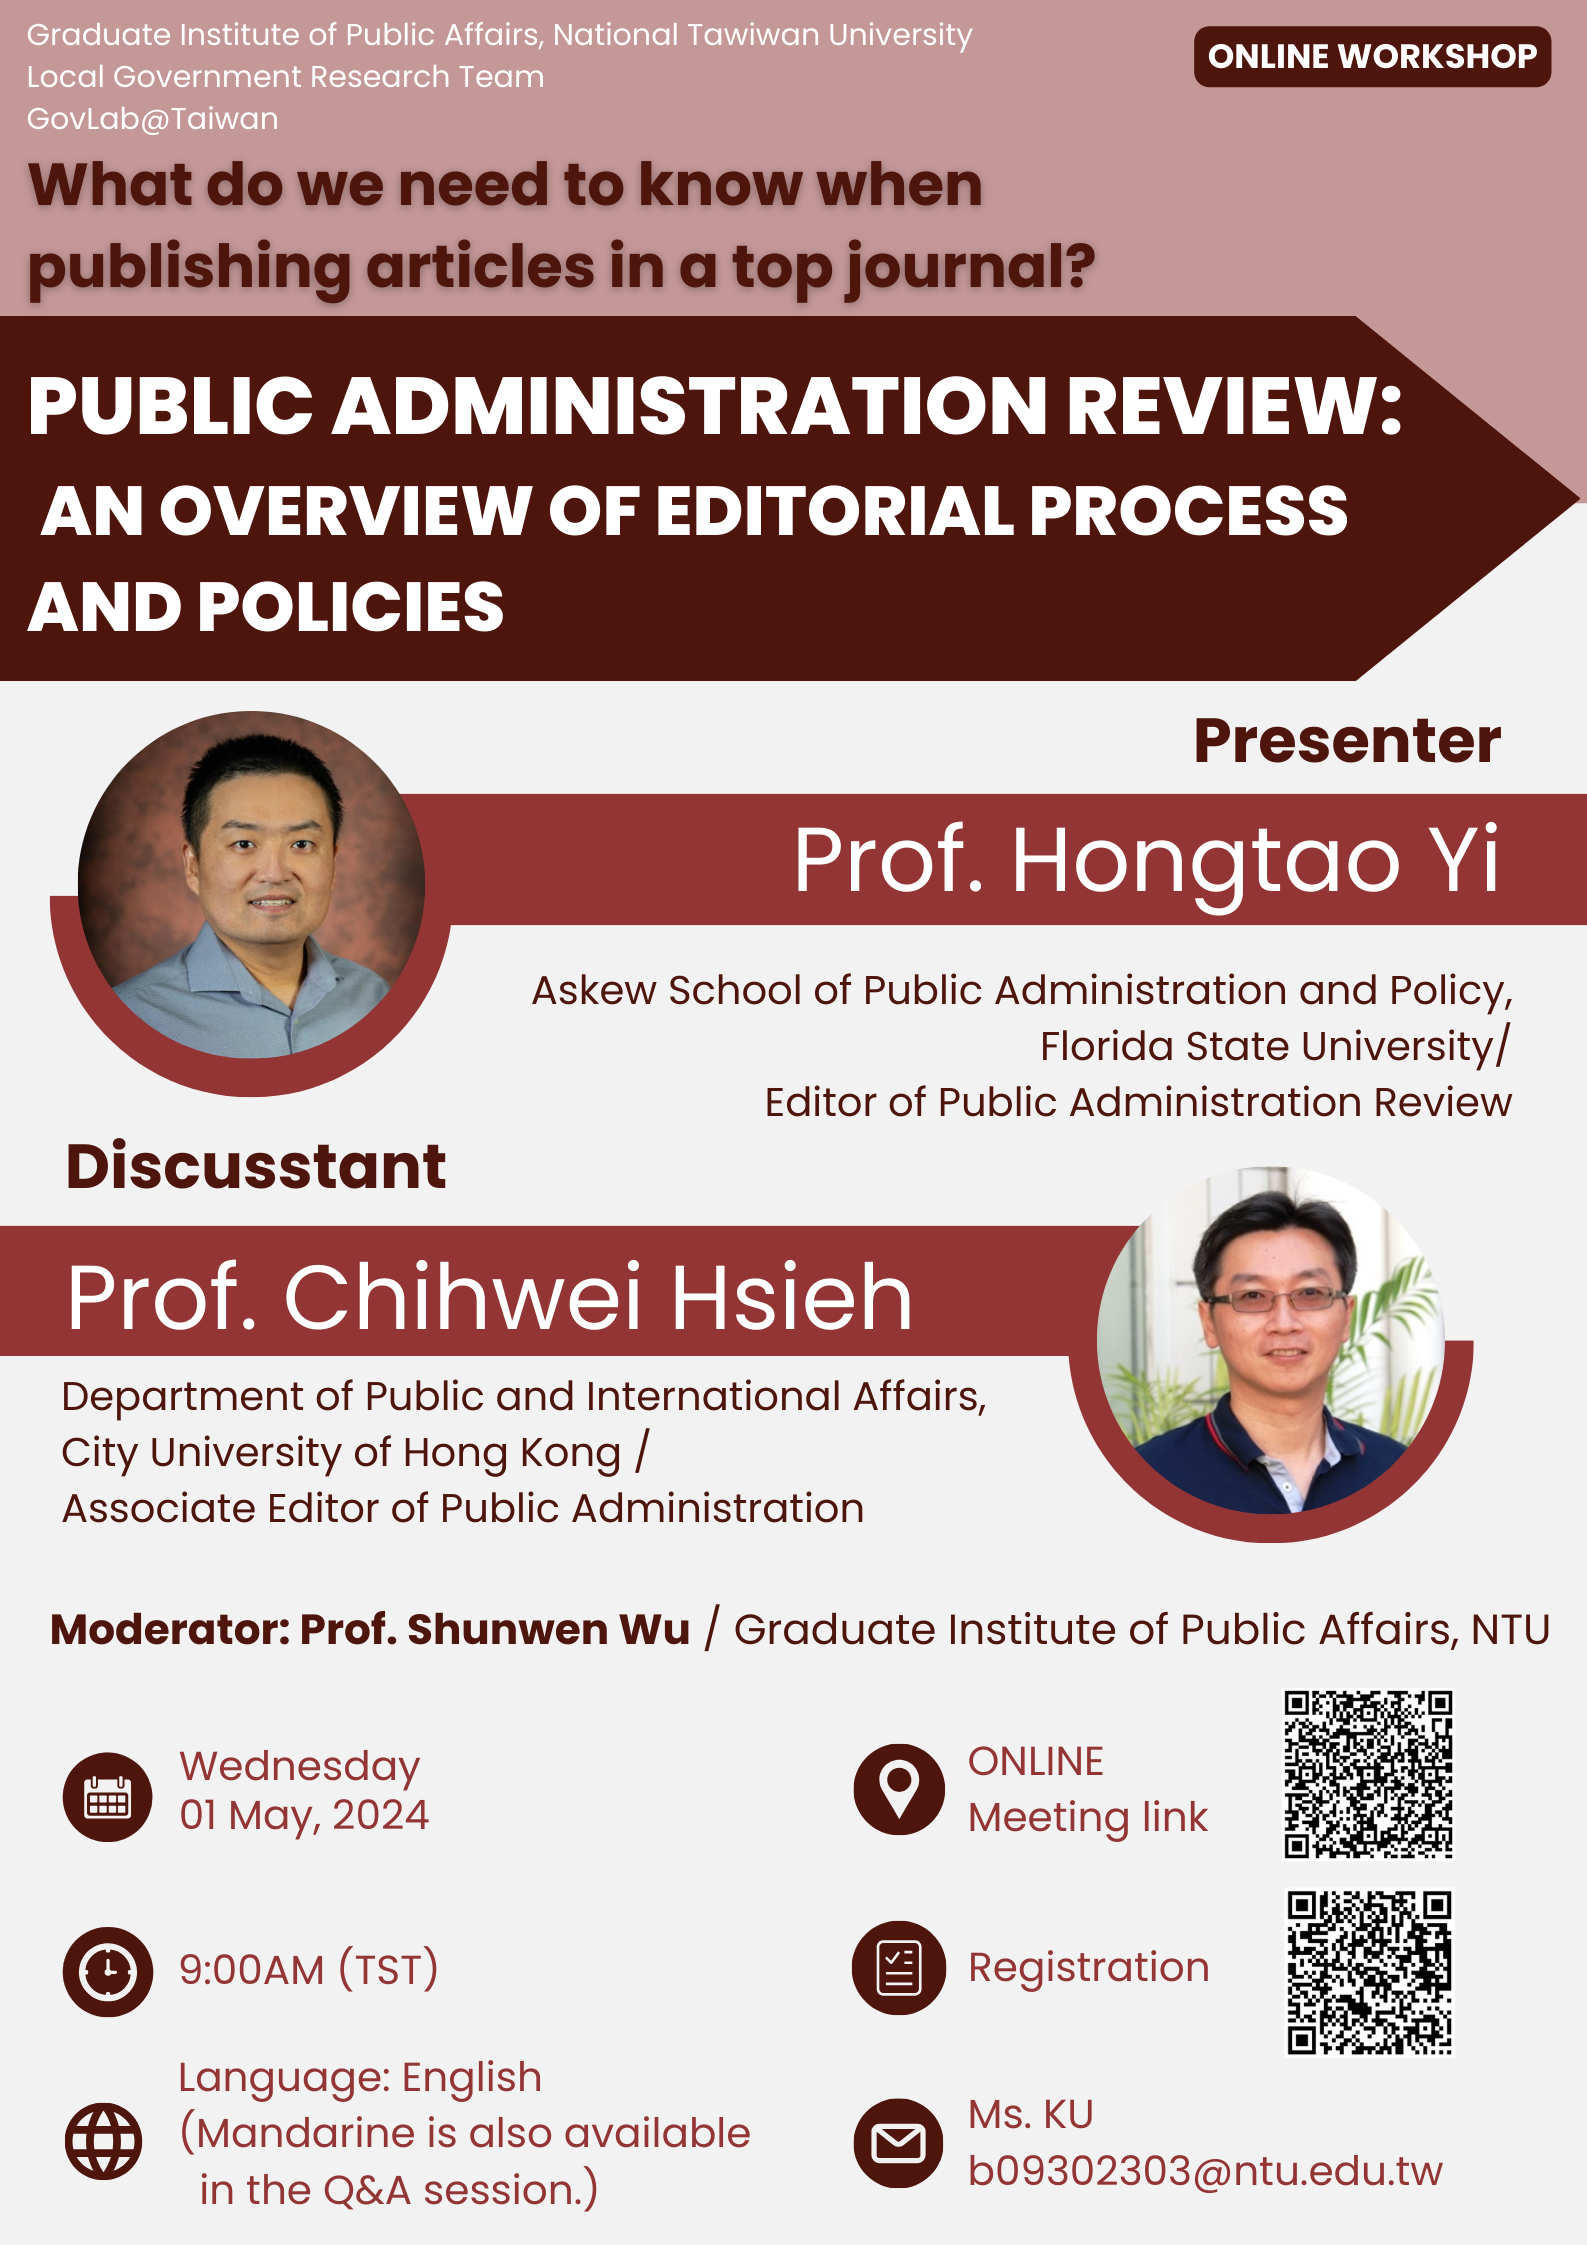 【學術活動】2023年5月1日Public Administration Review: An Overview of Editorial Process and Policies工作坊